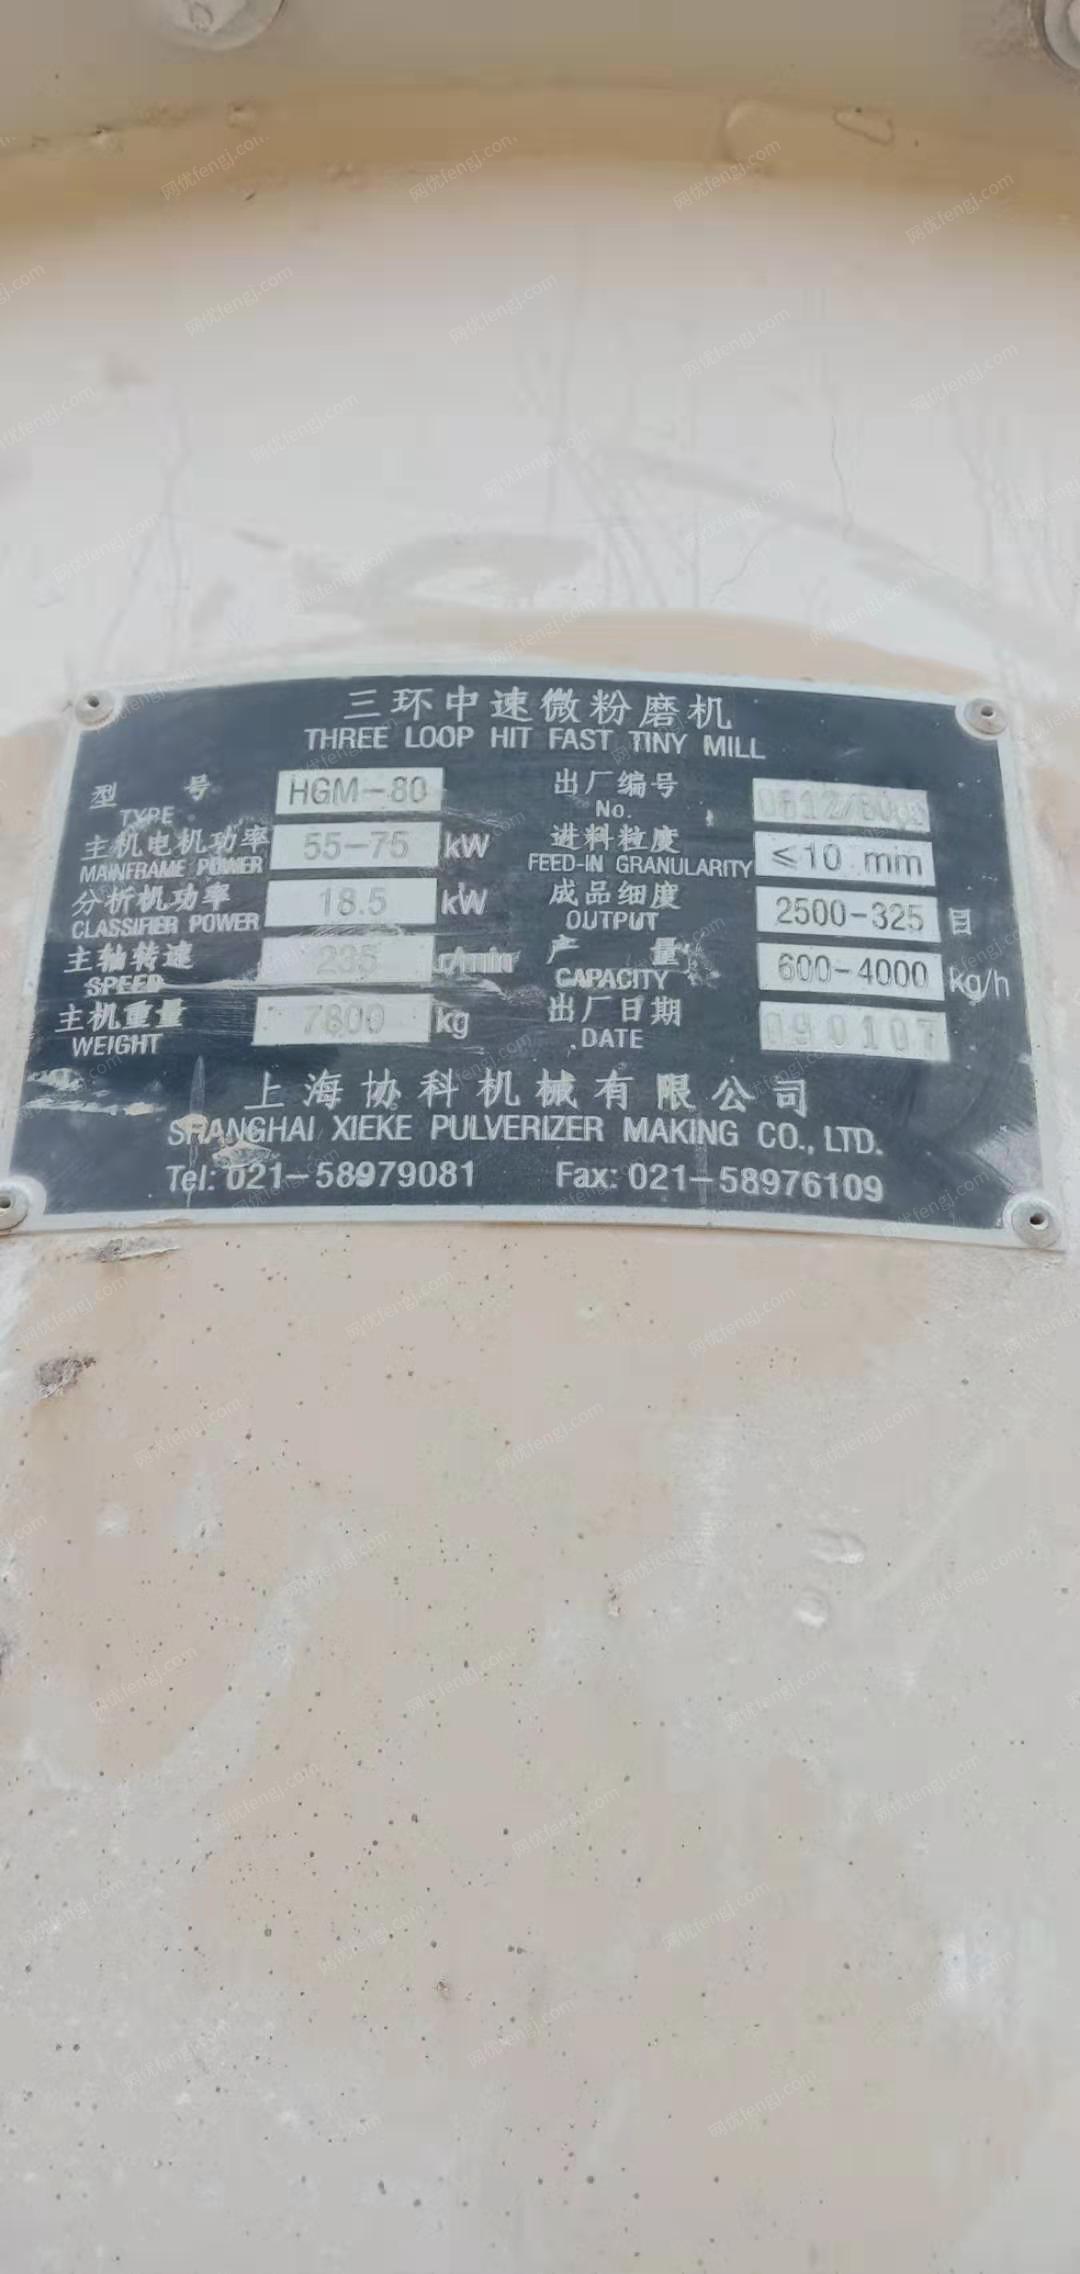 石粉厂处理1台上海协科HGM-80中速磨粉机